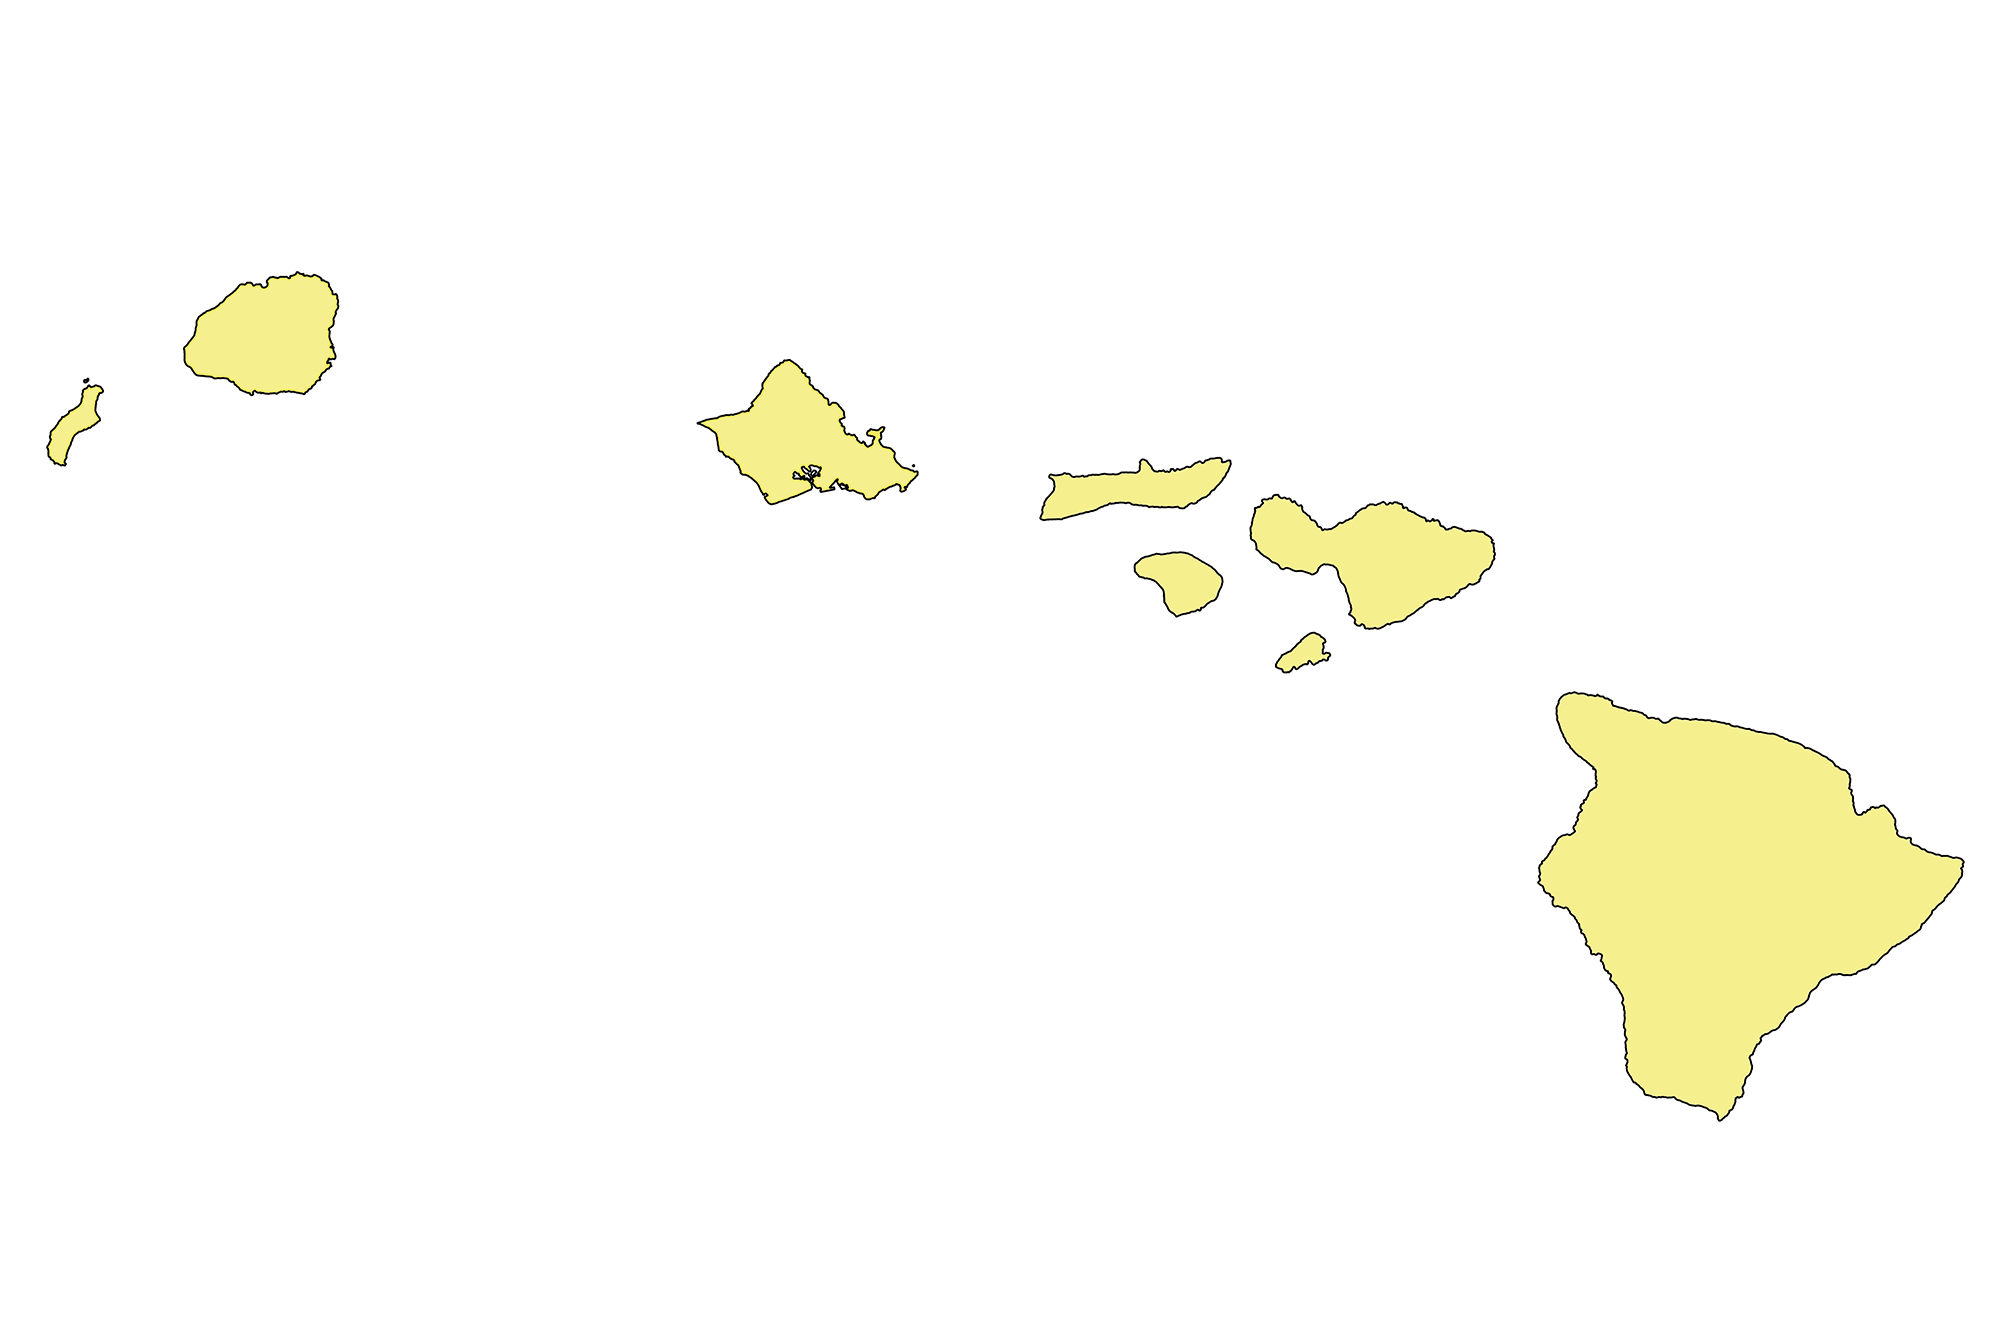 Simple map of the Hawaiian Islands.